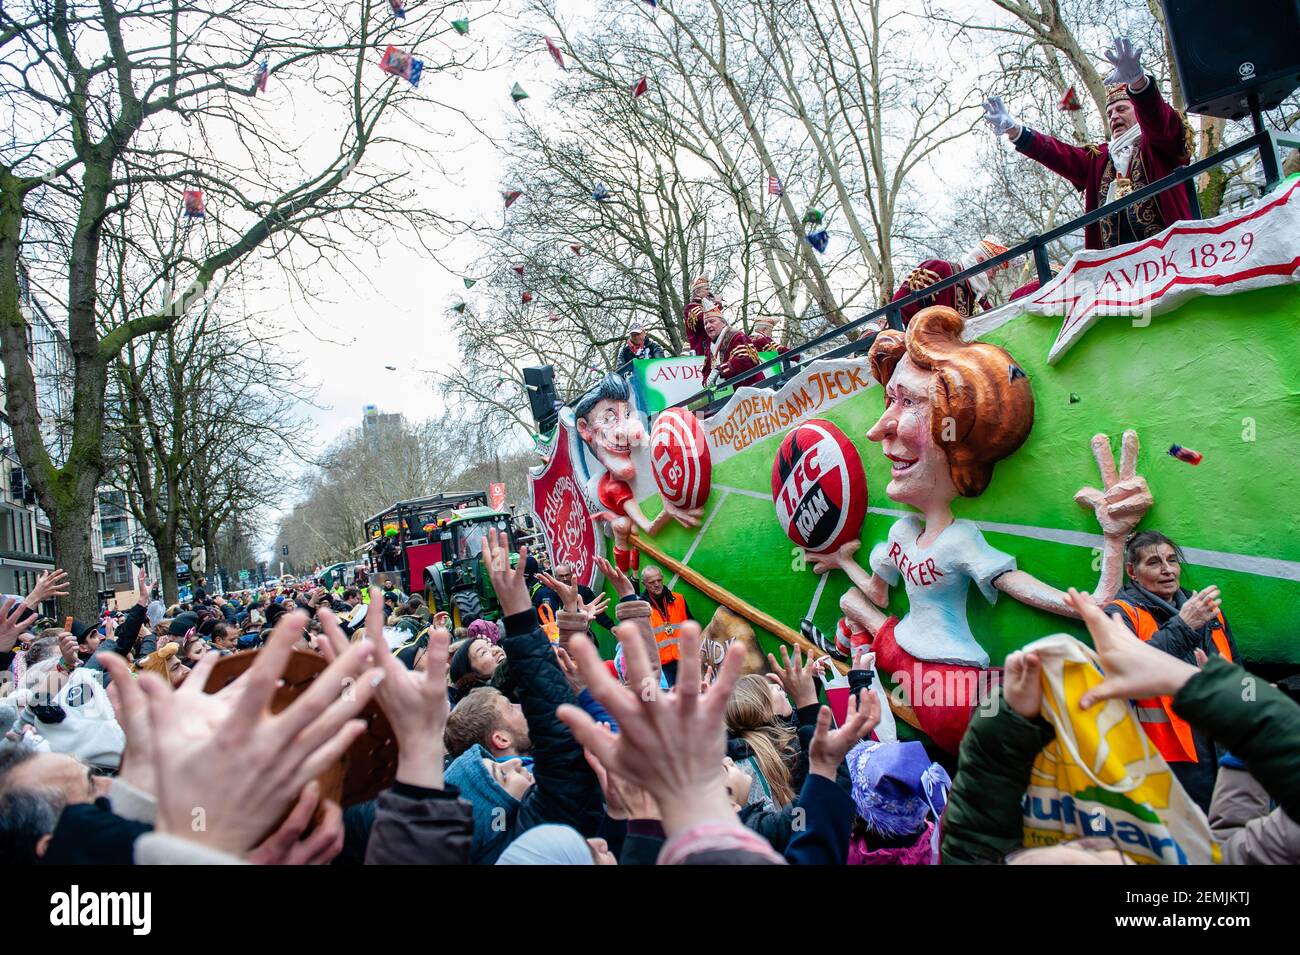 Le persone in costume sono viste cadere caramelle alla folla durante la sfilata. A Düsseldorf, il calendario degli eventi di Carnevale comprende non meno di 300 spettacoli di Carnevale, palle, anniversari, ricevimenti e feste in costume. Il motto di questa stagione è ‘Gemeinsam Jeck’ (insieme Carnevale). Le celebrazioni culminano nella Parata del Lunedì delle Rose. Più di 30 ensemble musicali e 5,000 partecipanti si uniscono alla processione attraverso la città. Carri elaborati e decorati affrontano questioni culturali e politiche e possono essere satirici, esilaranti e persino controversi. I galleggianti a tema politico di satir Foto Stock